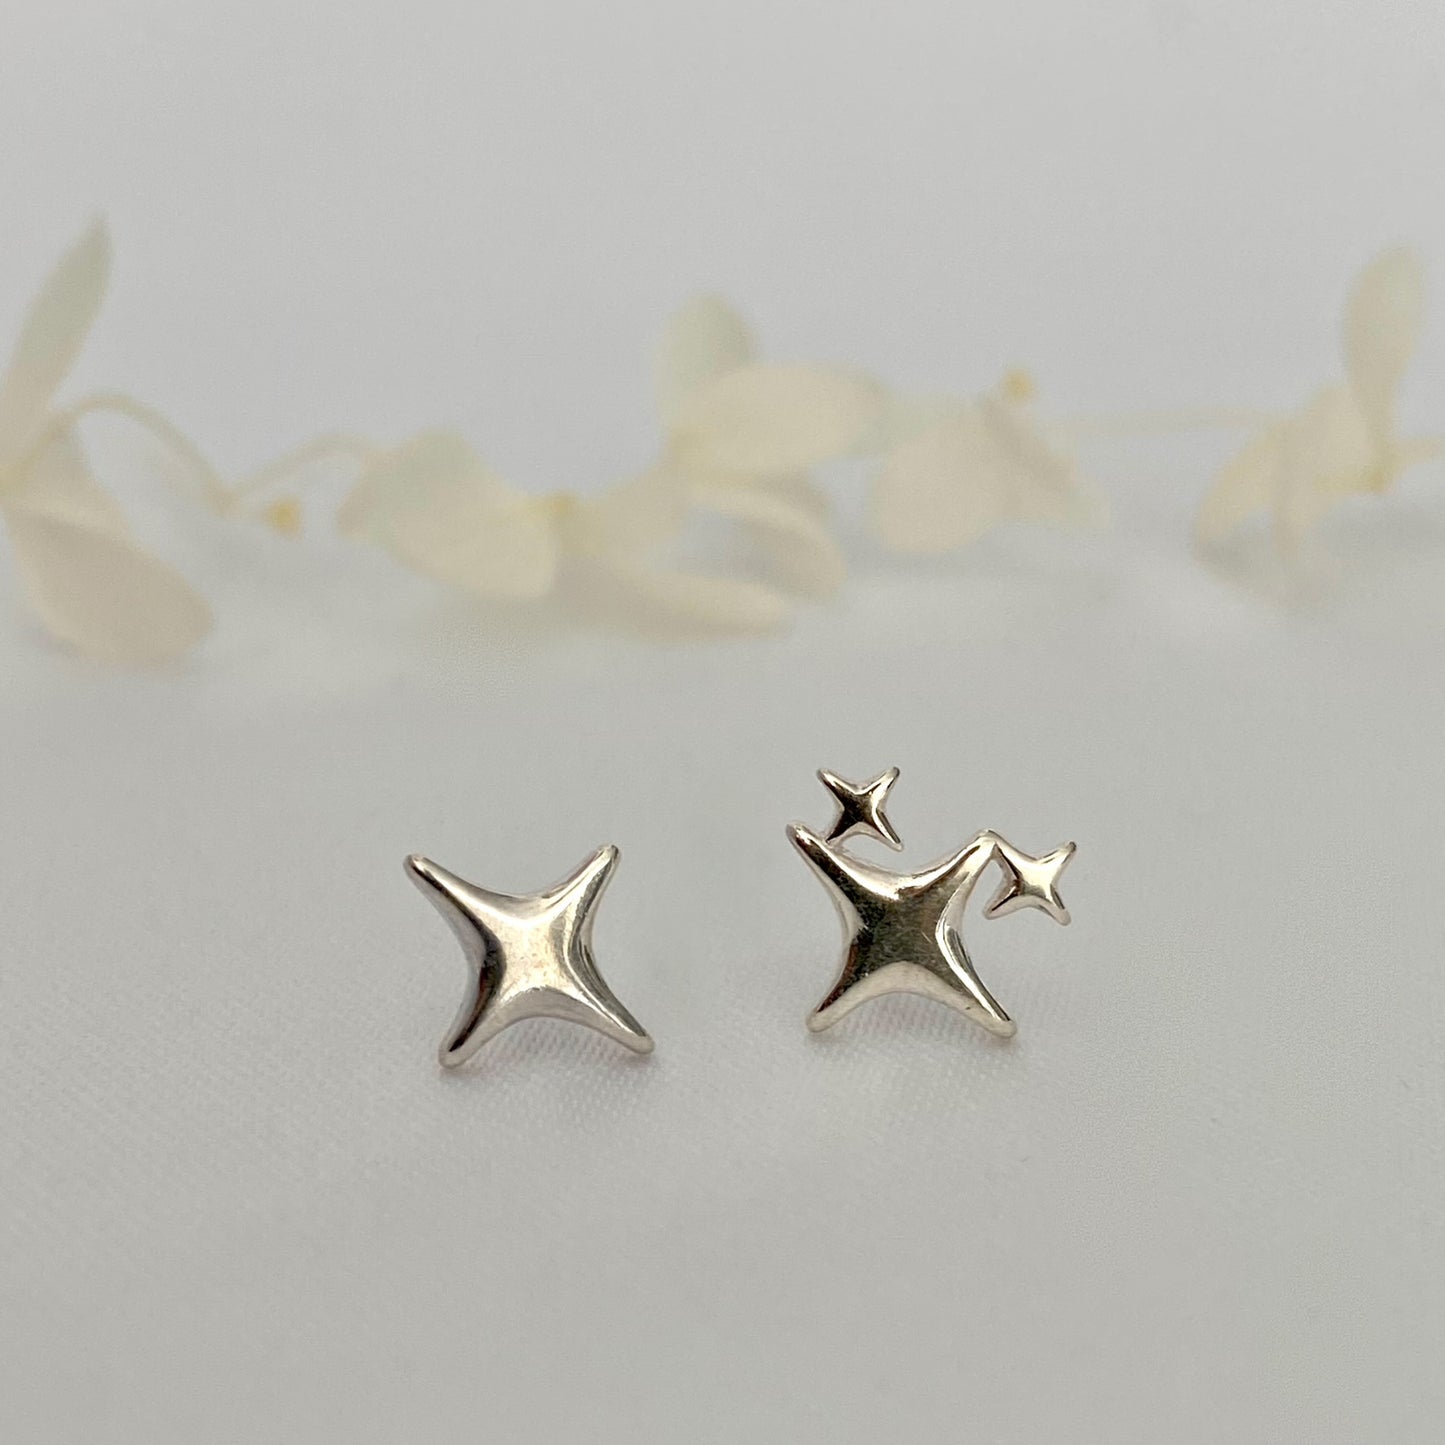 Twinkle Star Stud Earrings in Sterling Silver